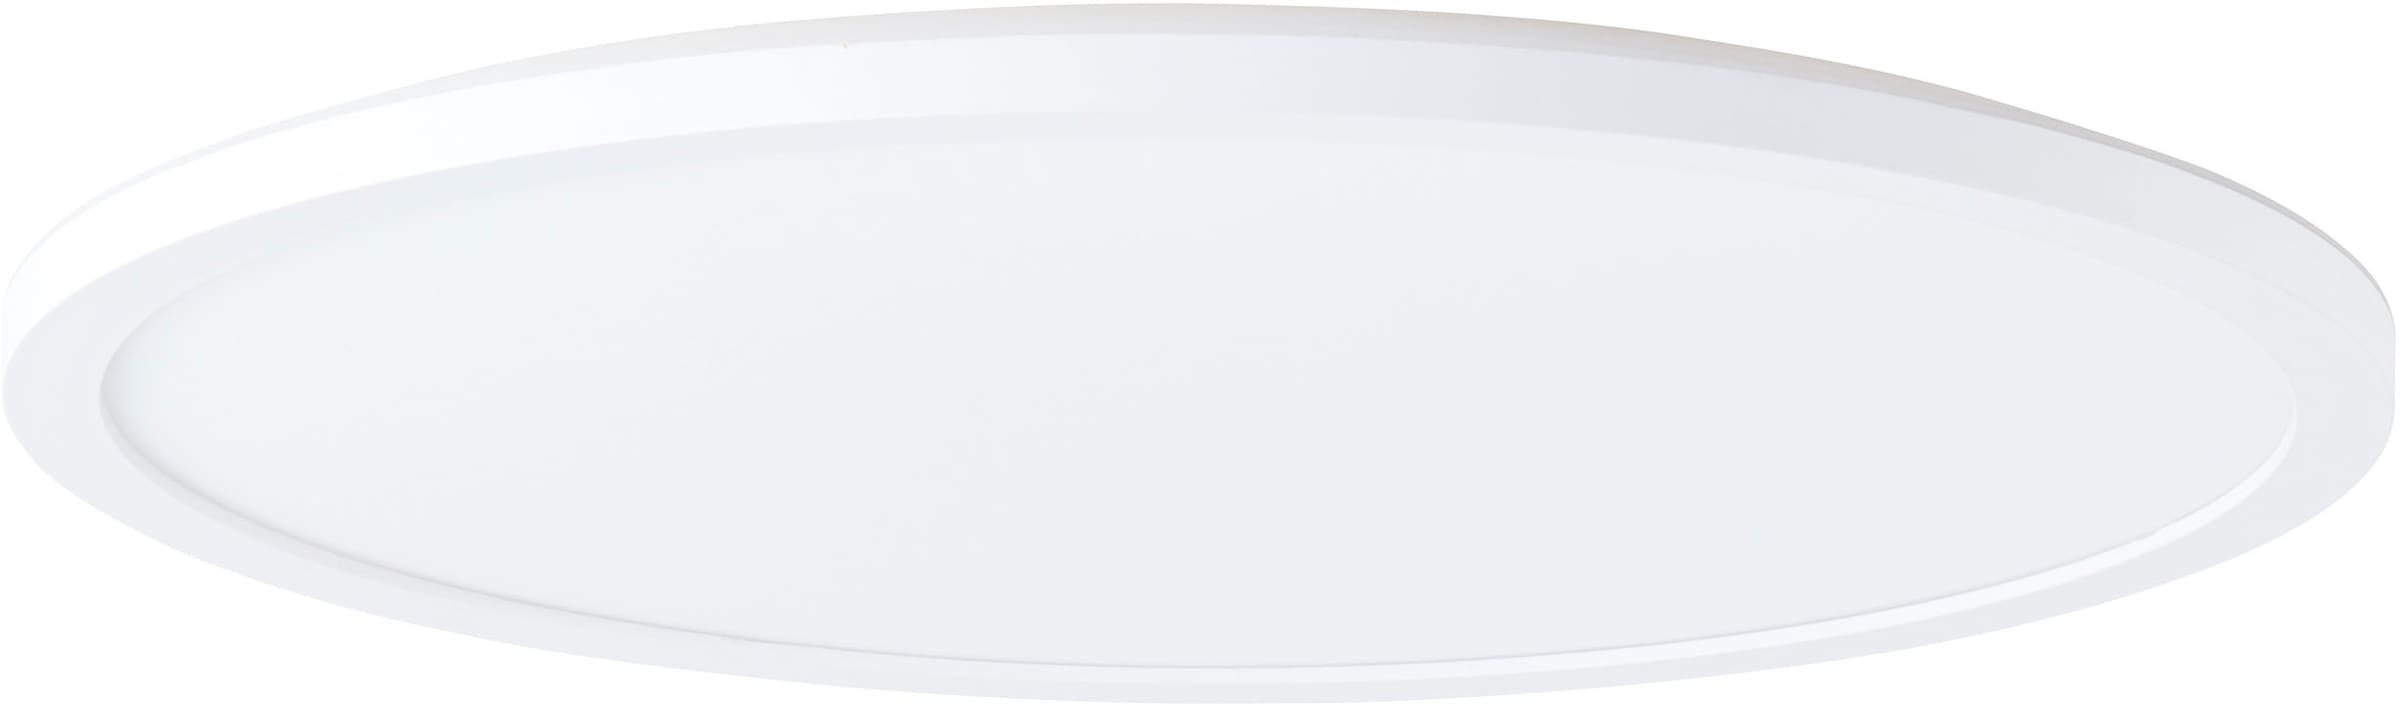 my home LED Deckenleuchte »Evita«, Ø 42 cm, 3400 Lumen, 4000 Kelvin, weiß